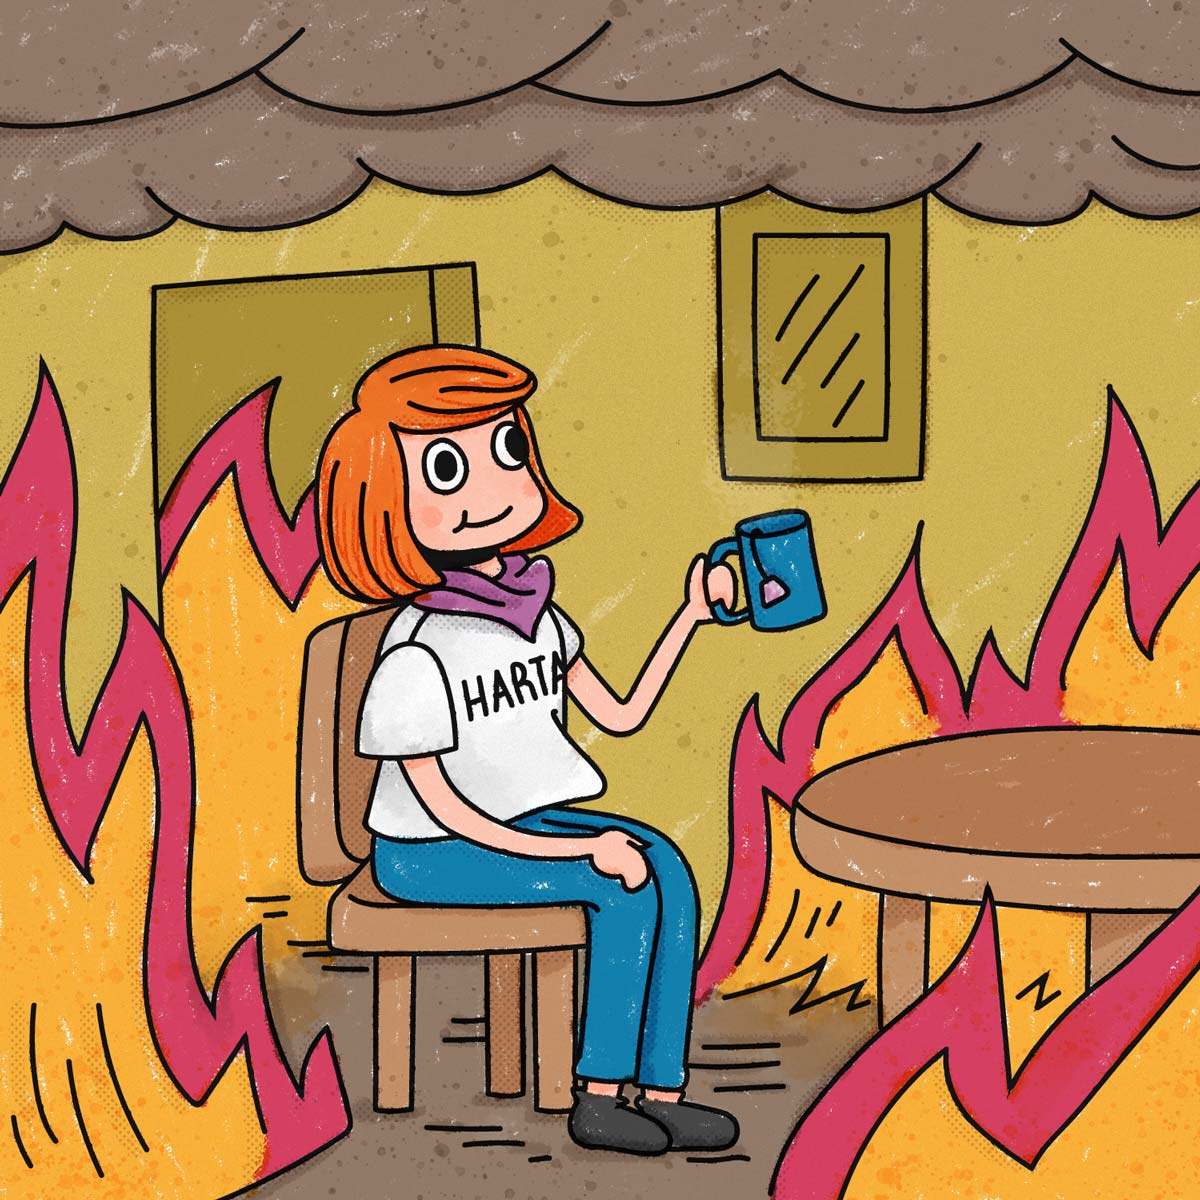 Chica con pelo naranja, remera de harta, sonriente mientras toma té, en un cuarto rodeado de llamas.